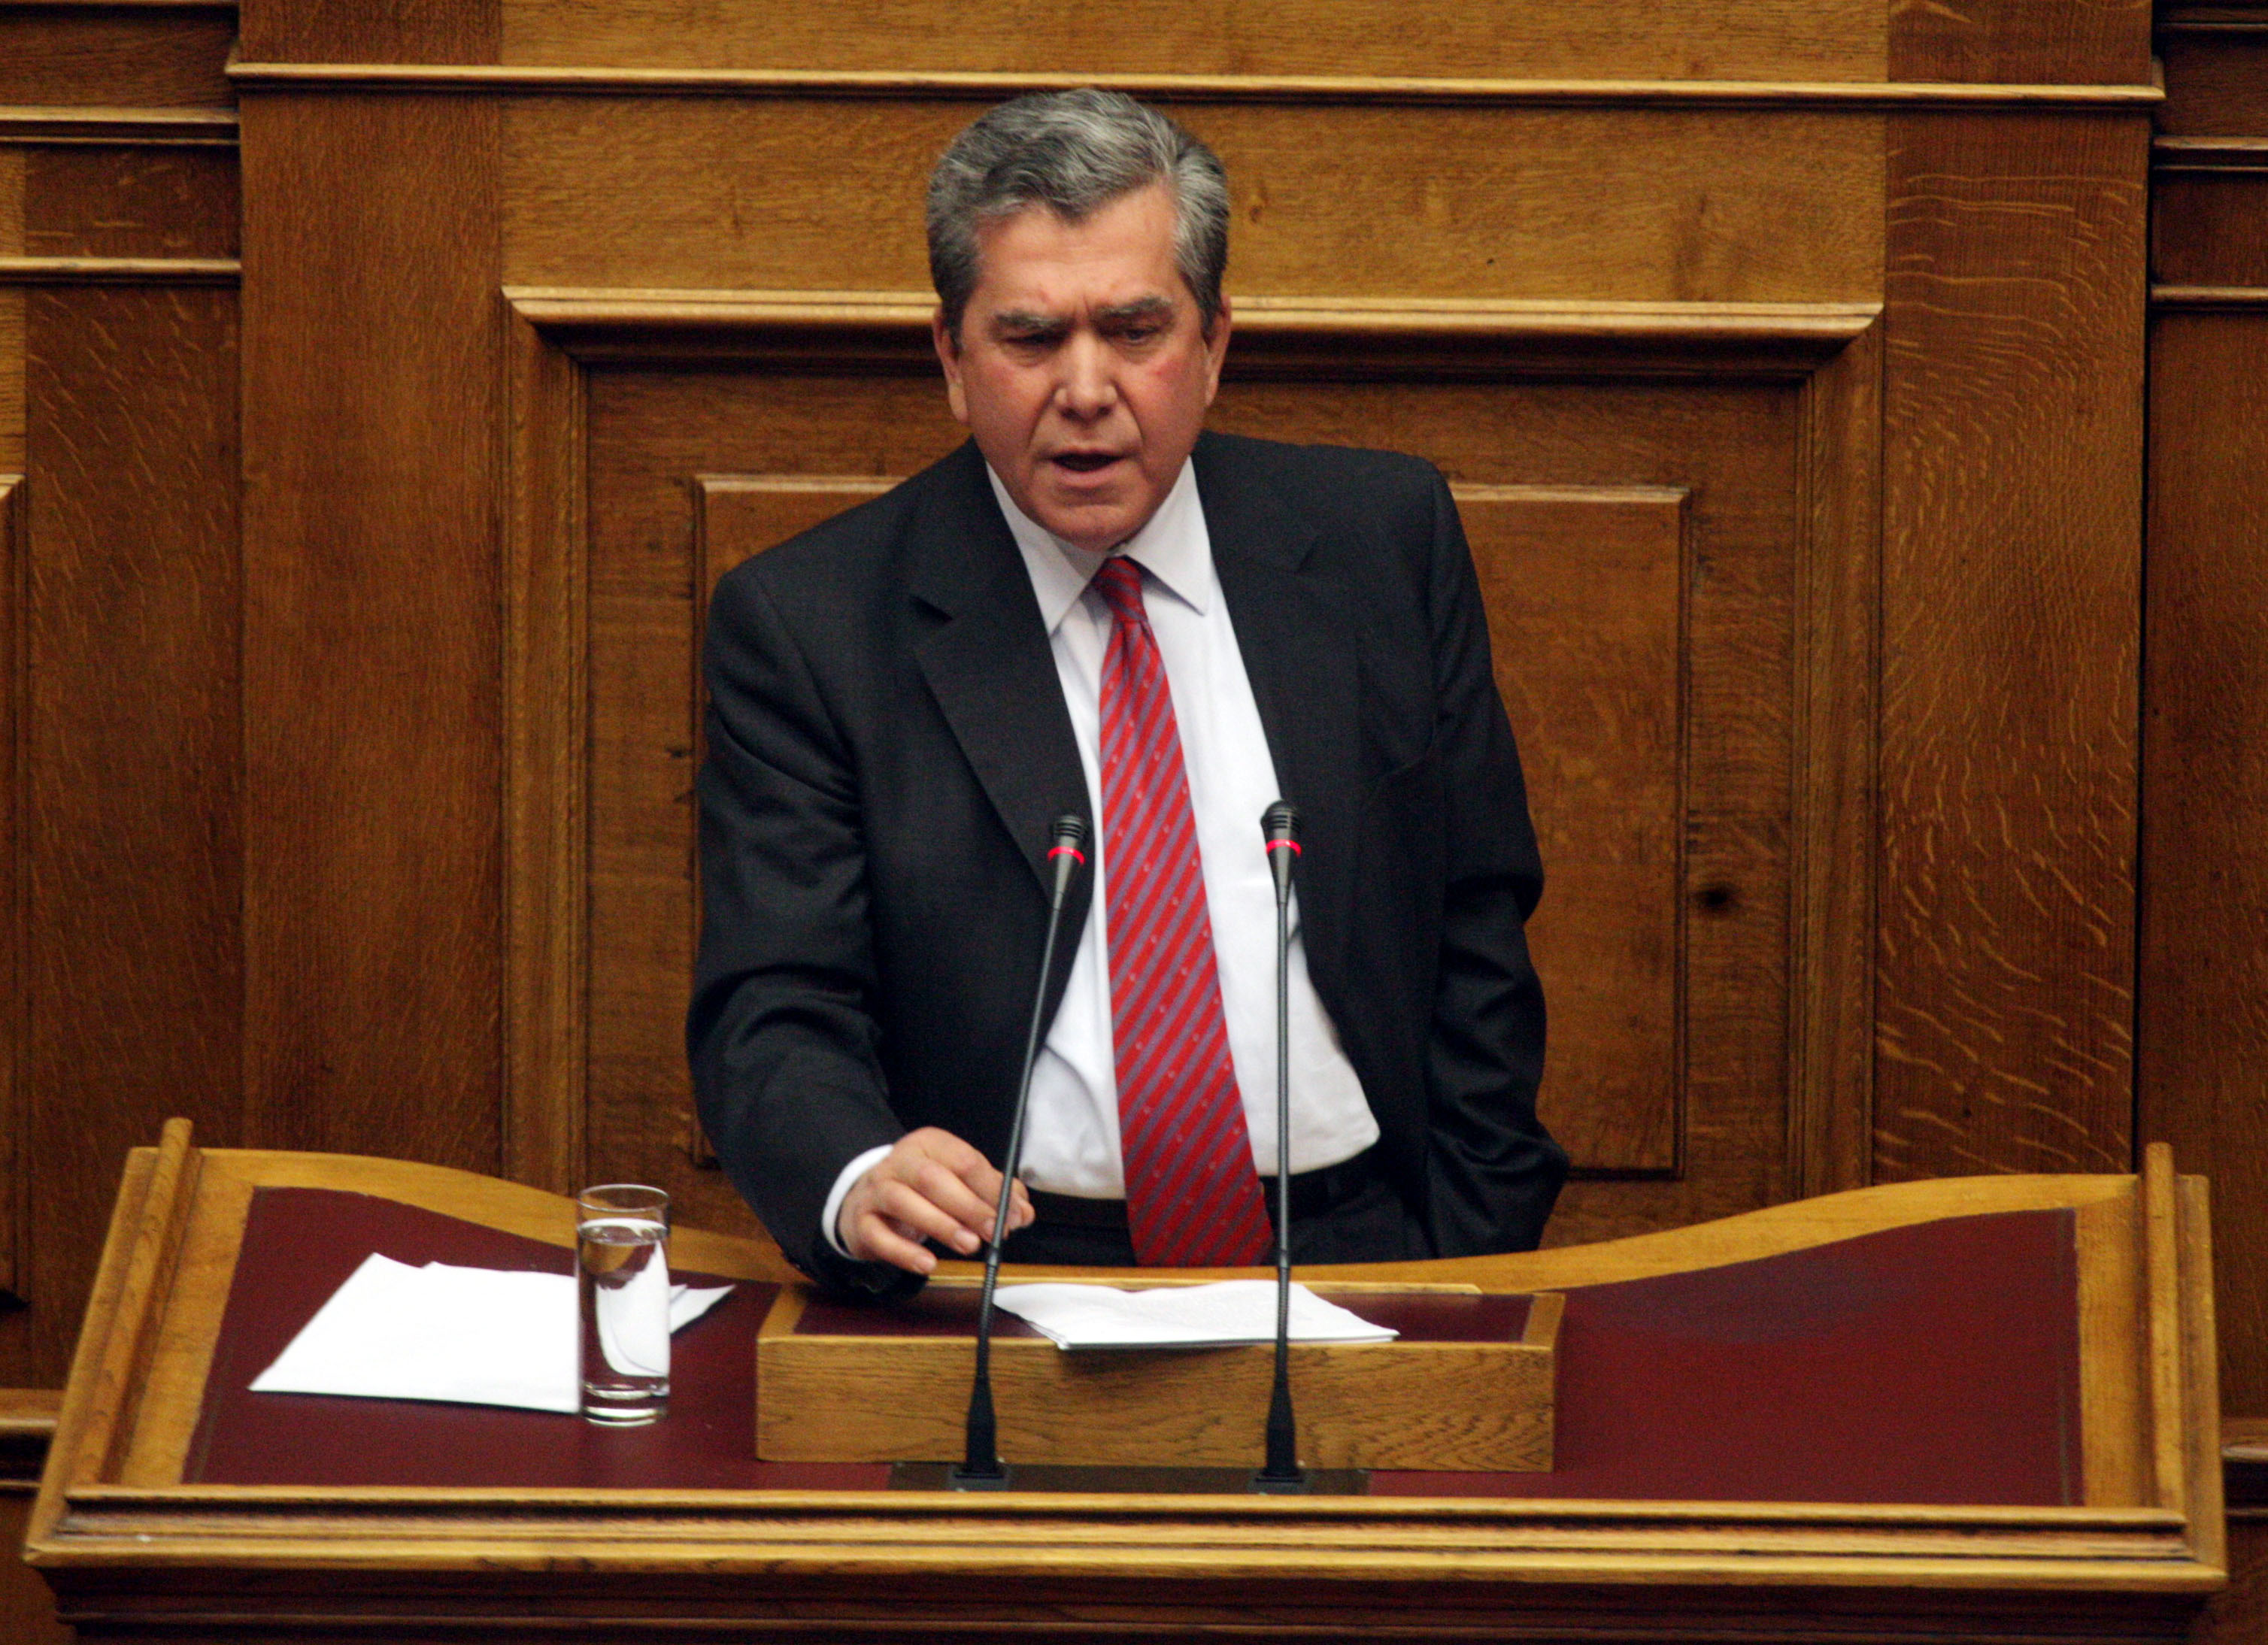 Μητρόπουλος: Εάν ο ΣΥΡΙΖΑ δεν καταφέρει να εξασφαλίσει κοινοβουλευτική πλειοψηφία, είναι ενδεχόμενο να συνεχίσει τη μνημονιακή πολιτική